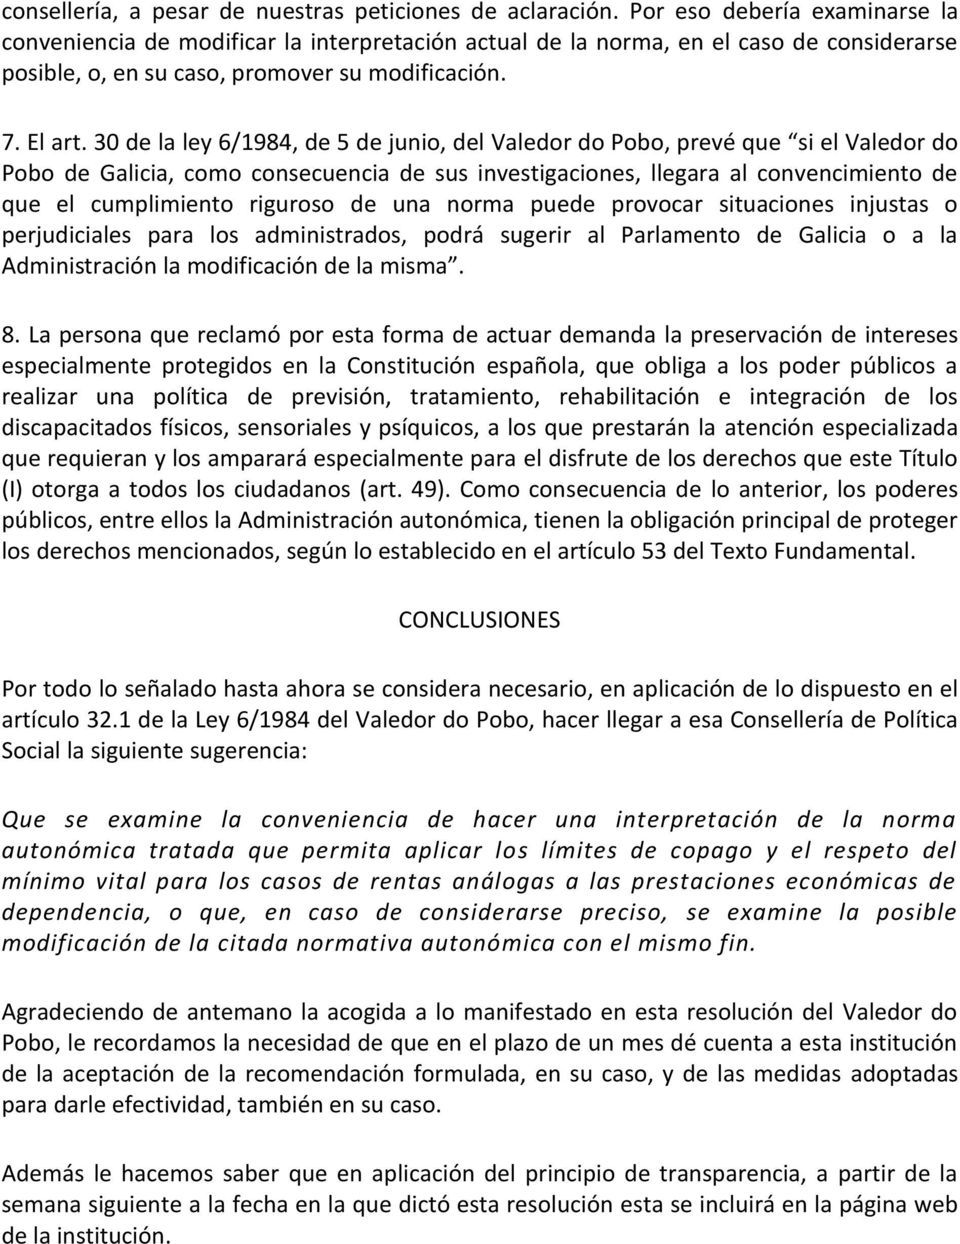 30 de la ley 6/1984, de 5 de junio, del Valedor do Pobo, prevé que si el Valedor do Pobo de Galicia, como consecuencia de sus investigaciones, llegara al convencimiento de que el cumplimiento